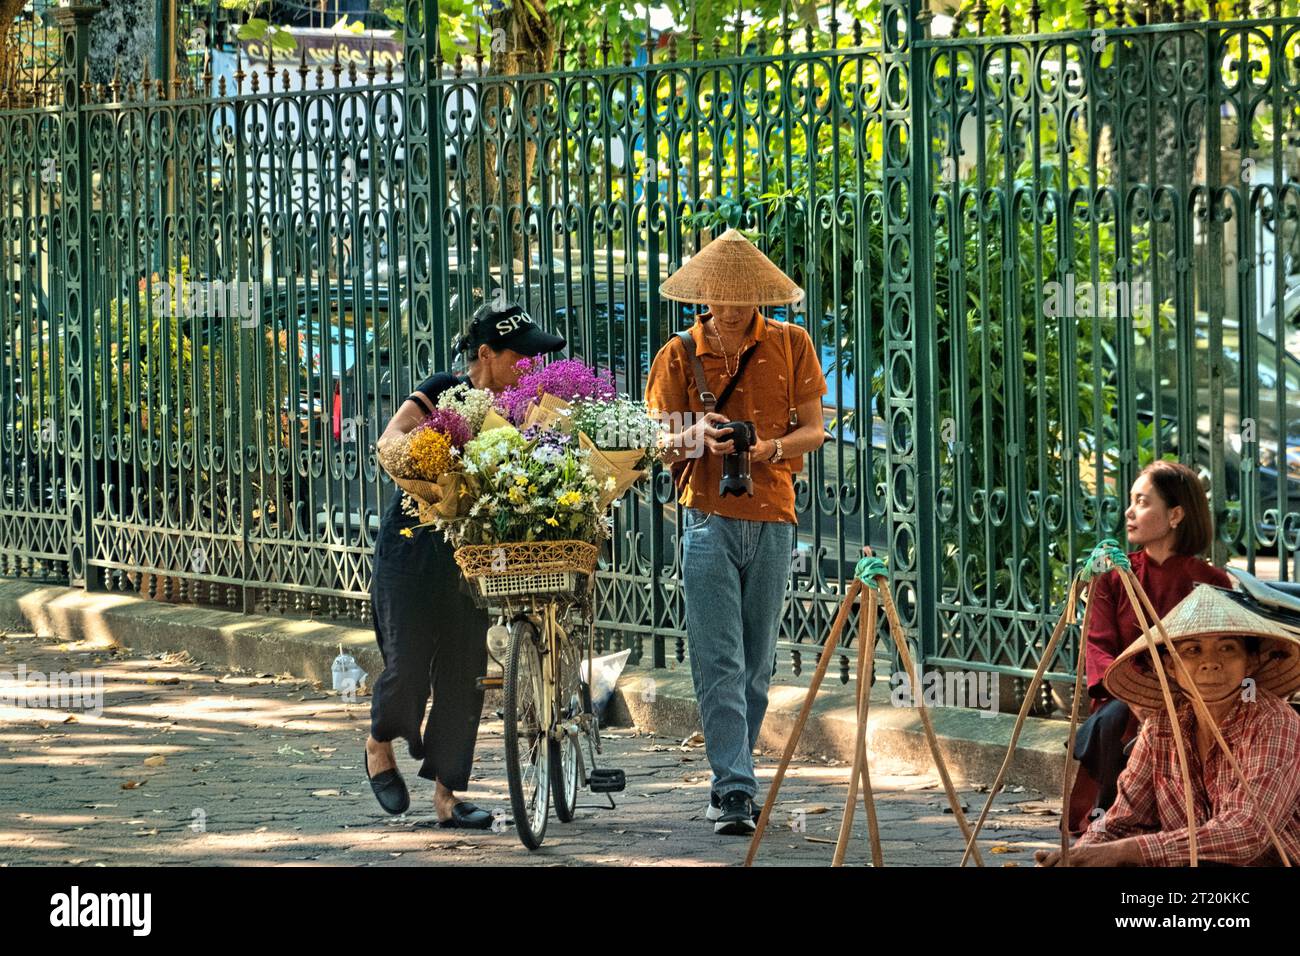 Vendeur de fleurs sur Phan Dinh Phung Street, Hanoi, Vietnam Banque D'Images